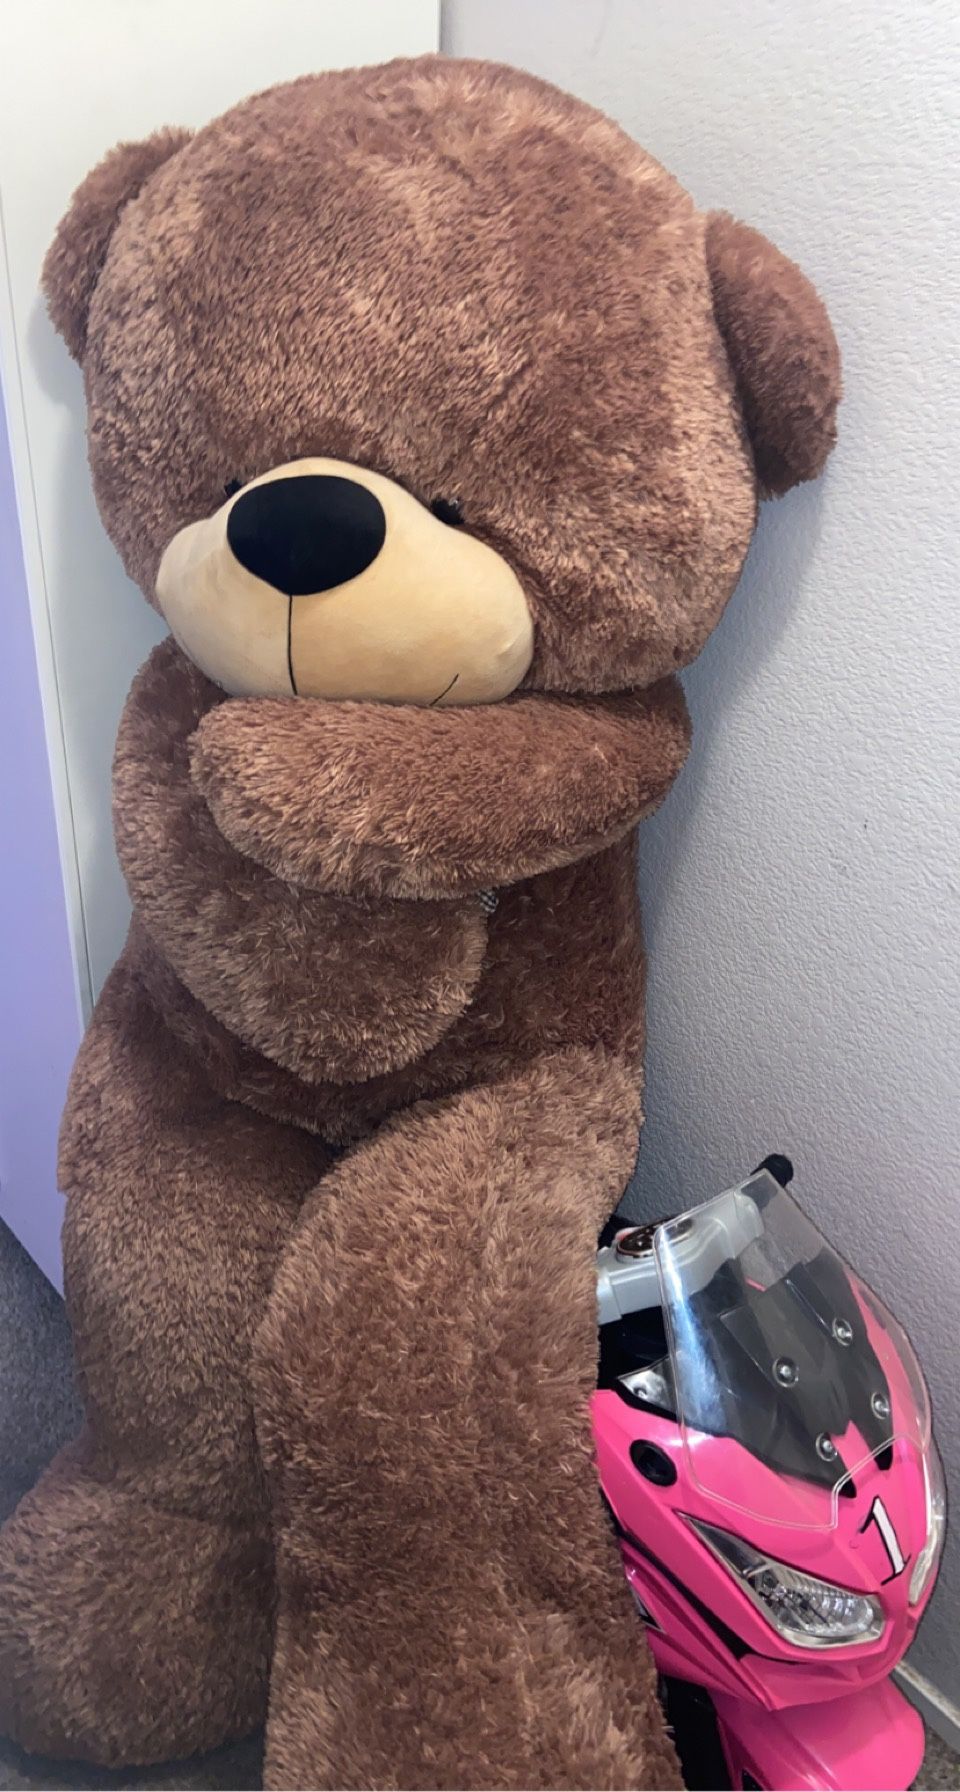 Giant Teddy Bear 🧸 